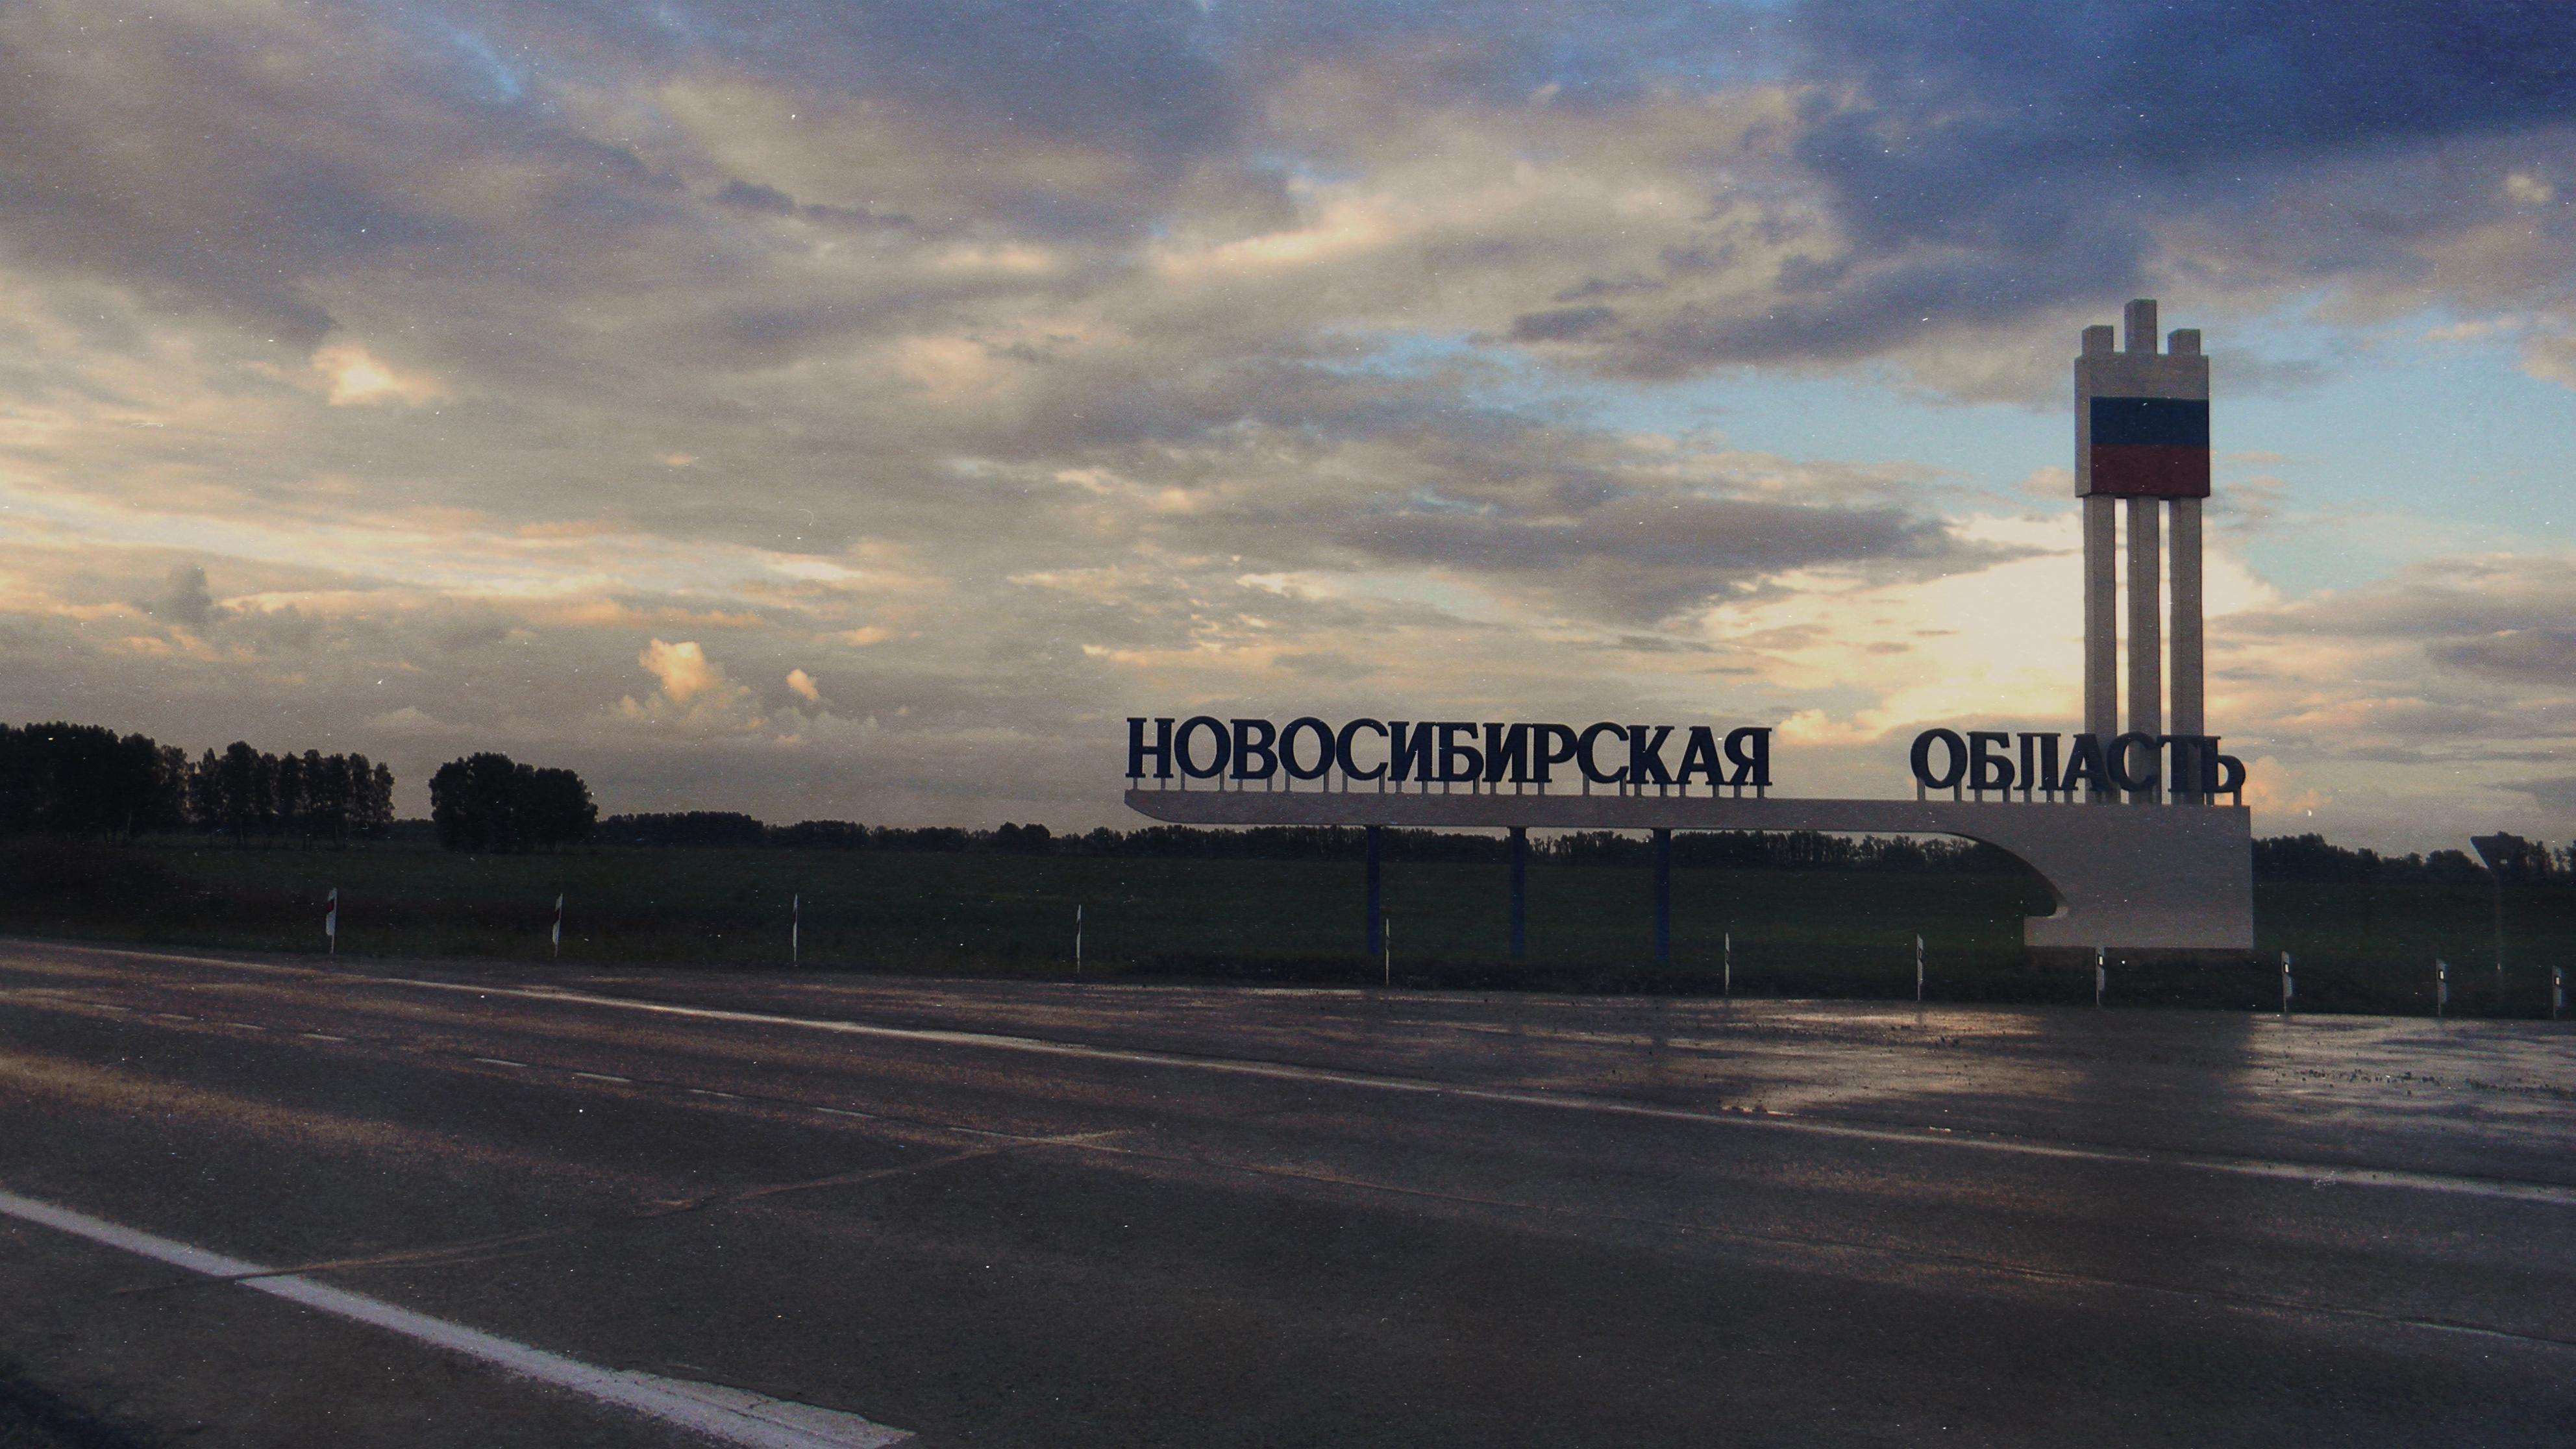 Въездная стела Новосибирская область